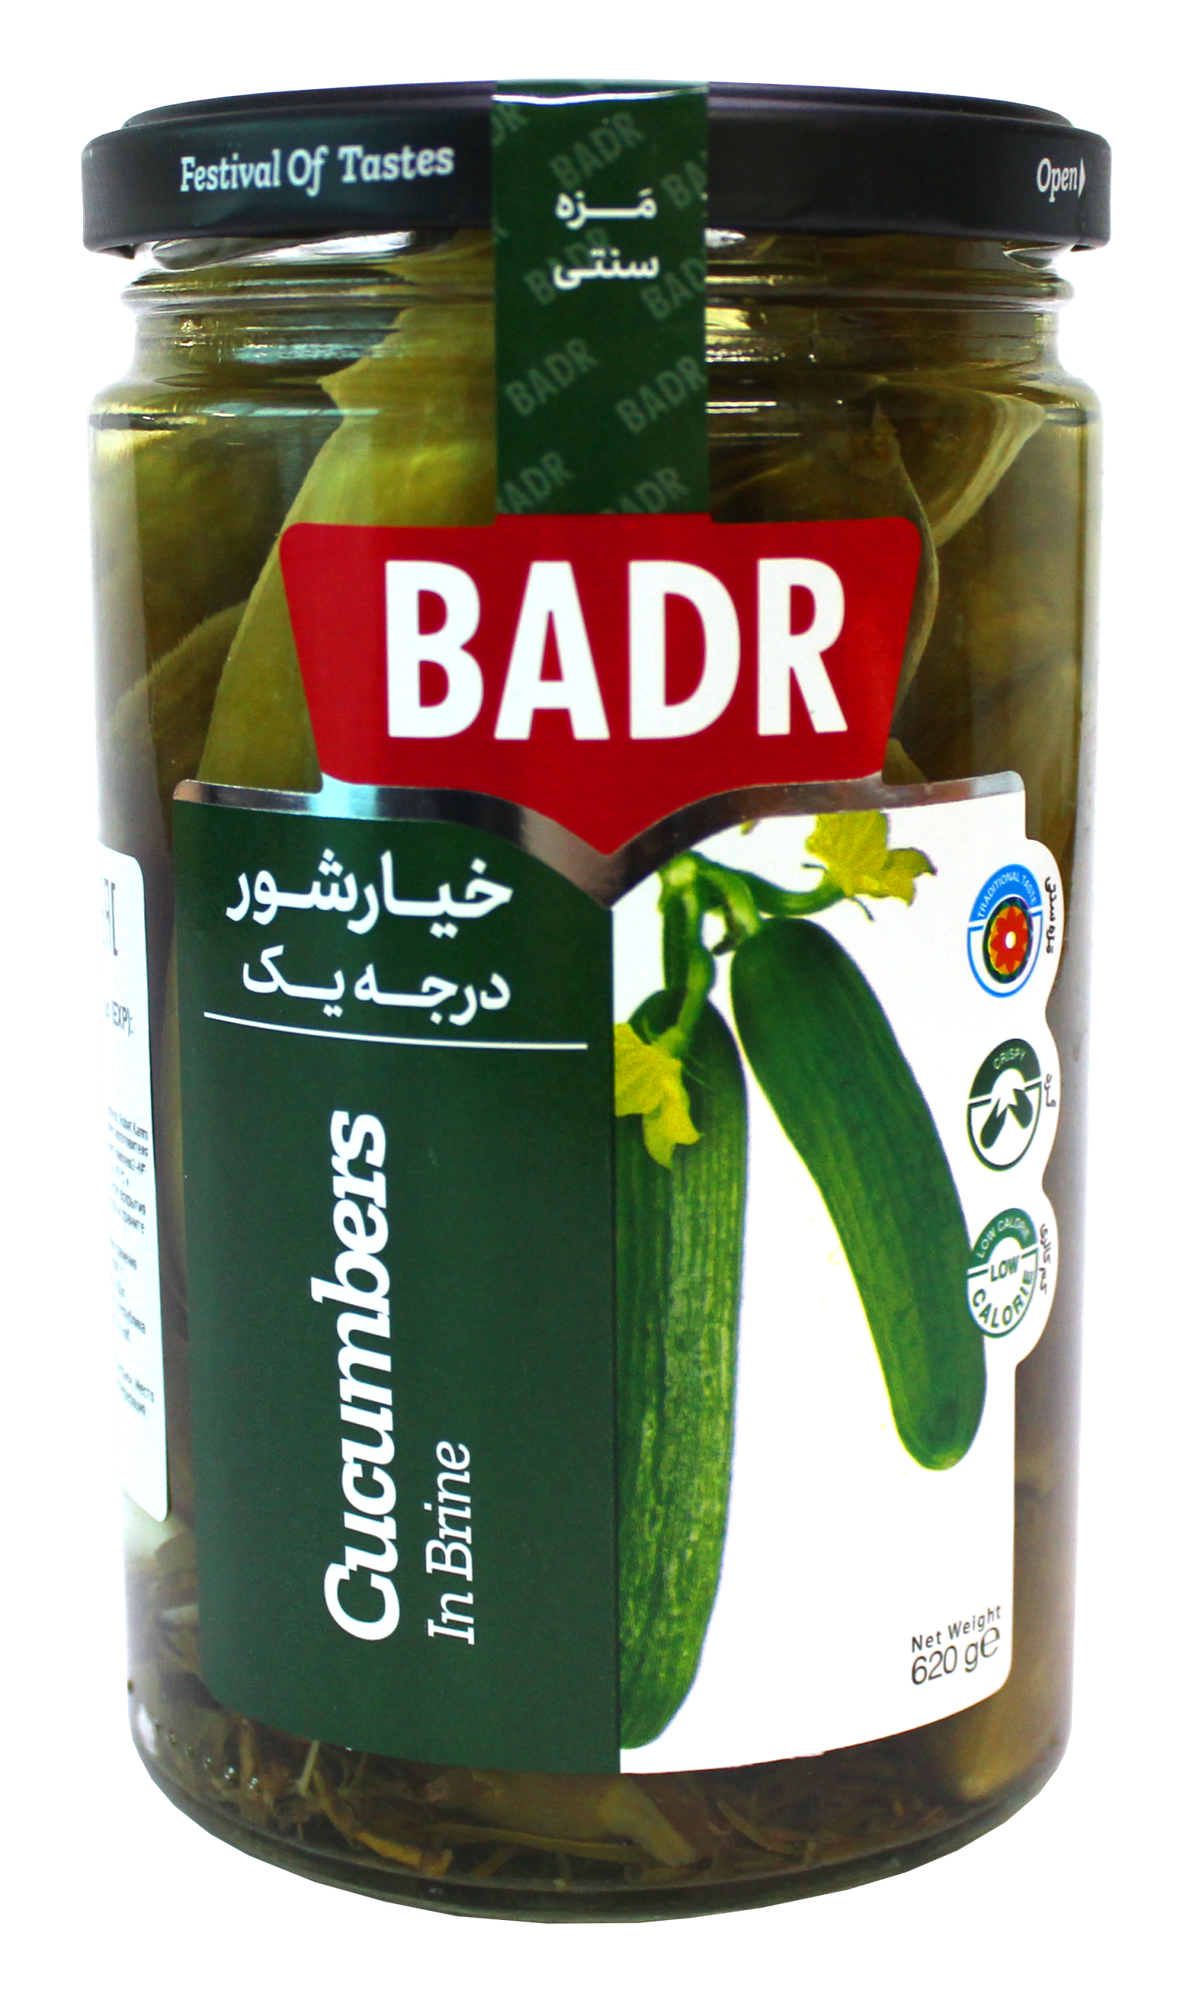 Огурцы в рассоле, ТМ BADR, Иран, 1 шт, 620 г, стеклянная банка